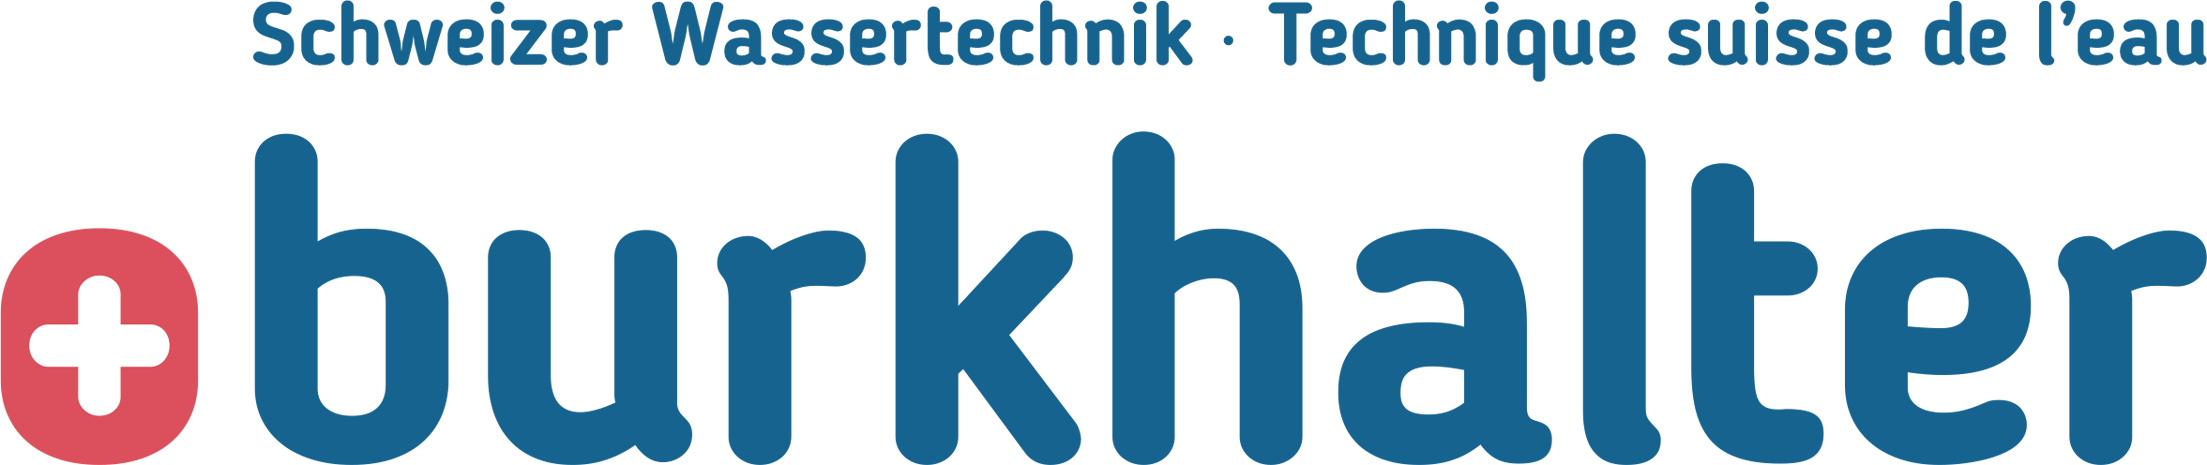 Logo Heinz Burkhalter Wassertechnik